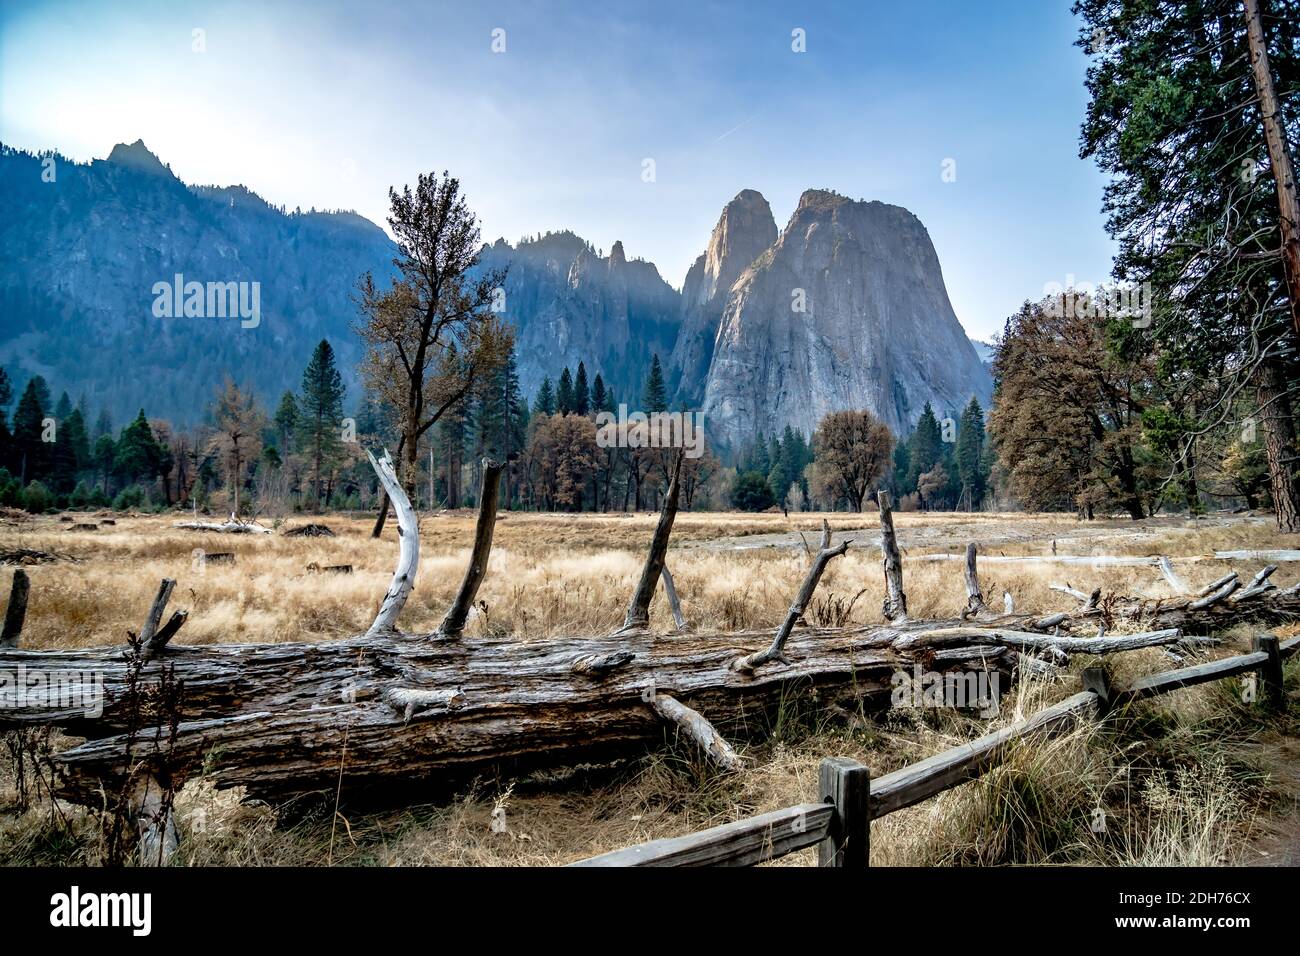 Early morning at yosemite national park california Stock Photo